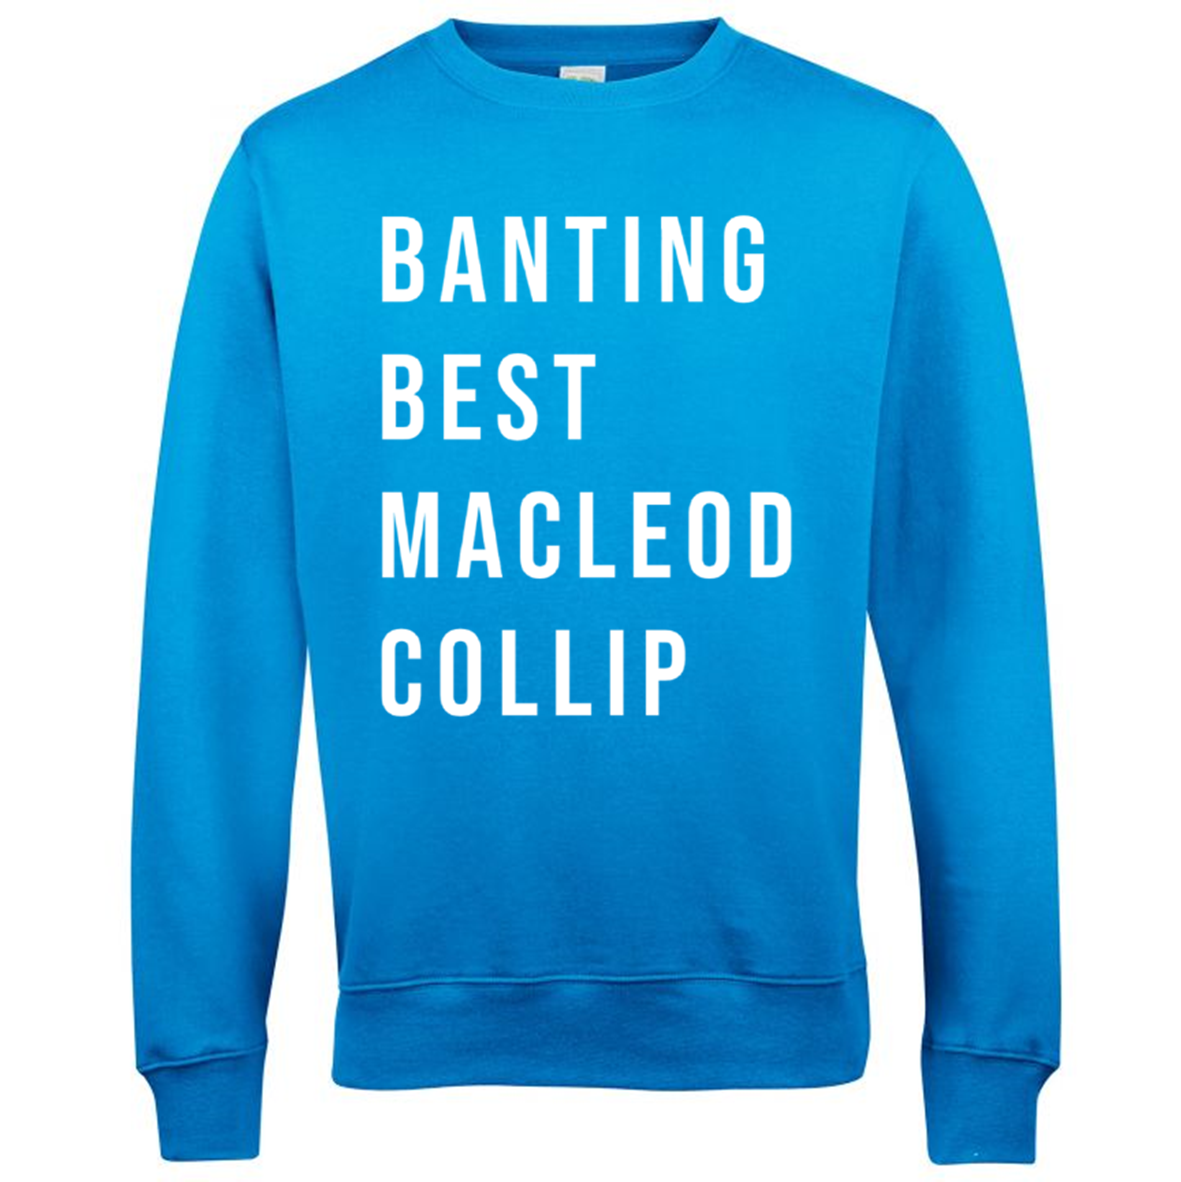 Banting, Best, Macleod & Collip Sweatshirt